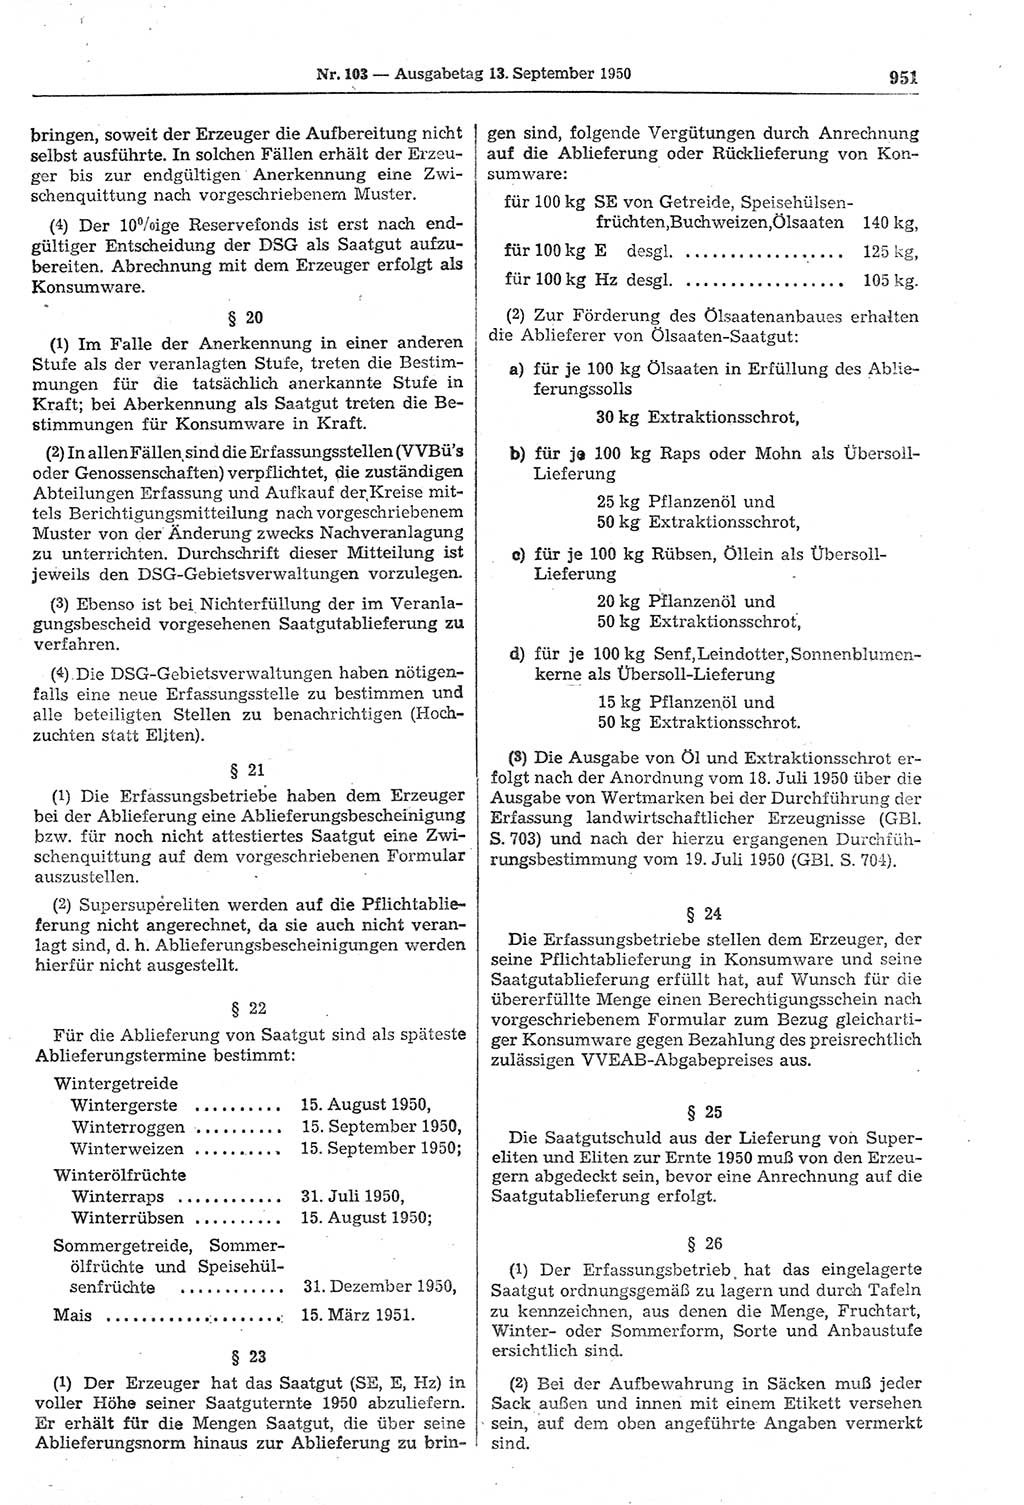 Gesetzblatt (GBl.) der Deutschen Demokratischen Republik (DDR) 1950, Seite 951 (GBl. DDR 1950, S. 951)